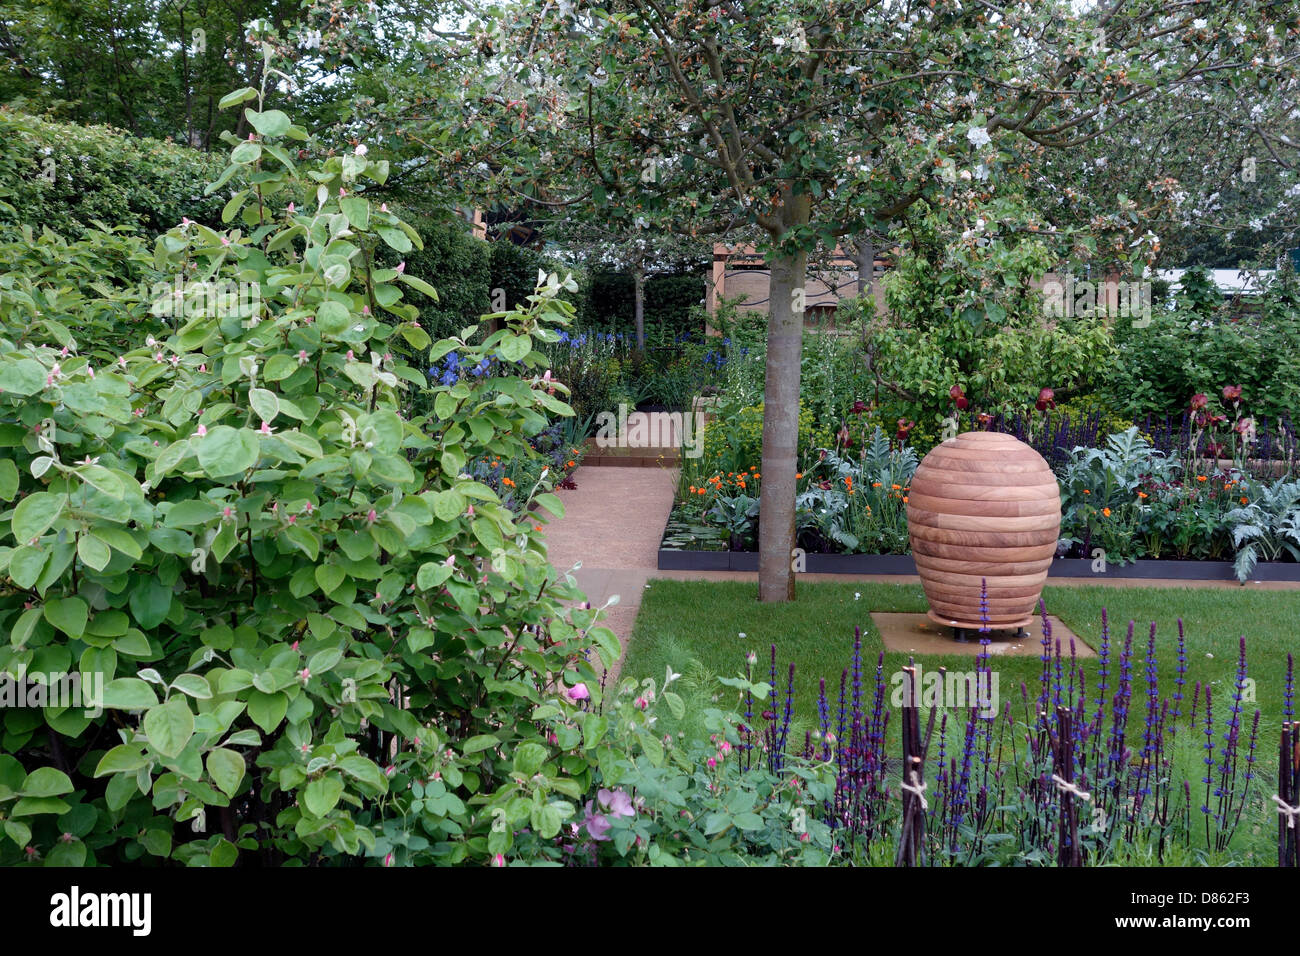 The Homebase Garden, Exhibitor: Homebase, Designer: Adam Frost. Chelsea Flower Show 2013 Stock Photo